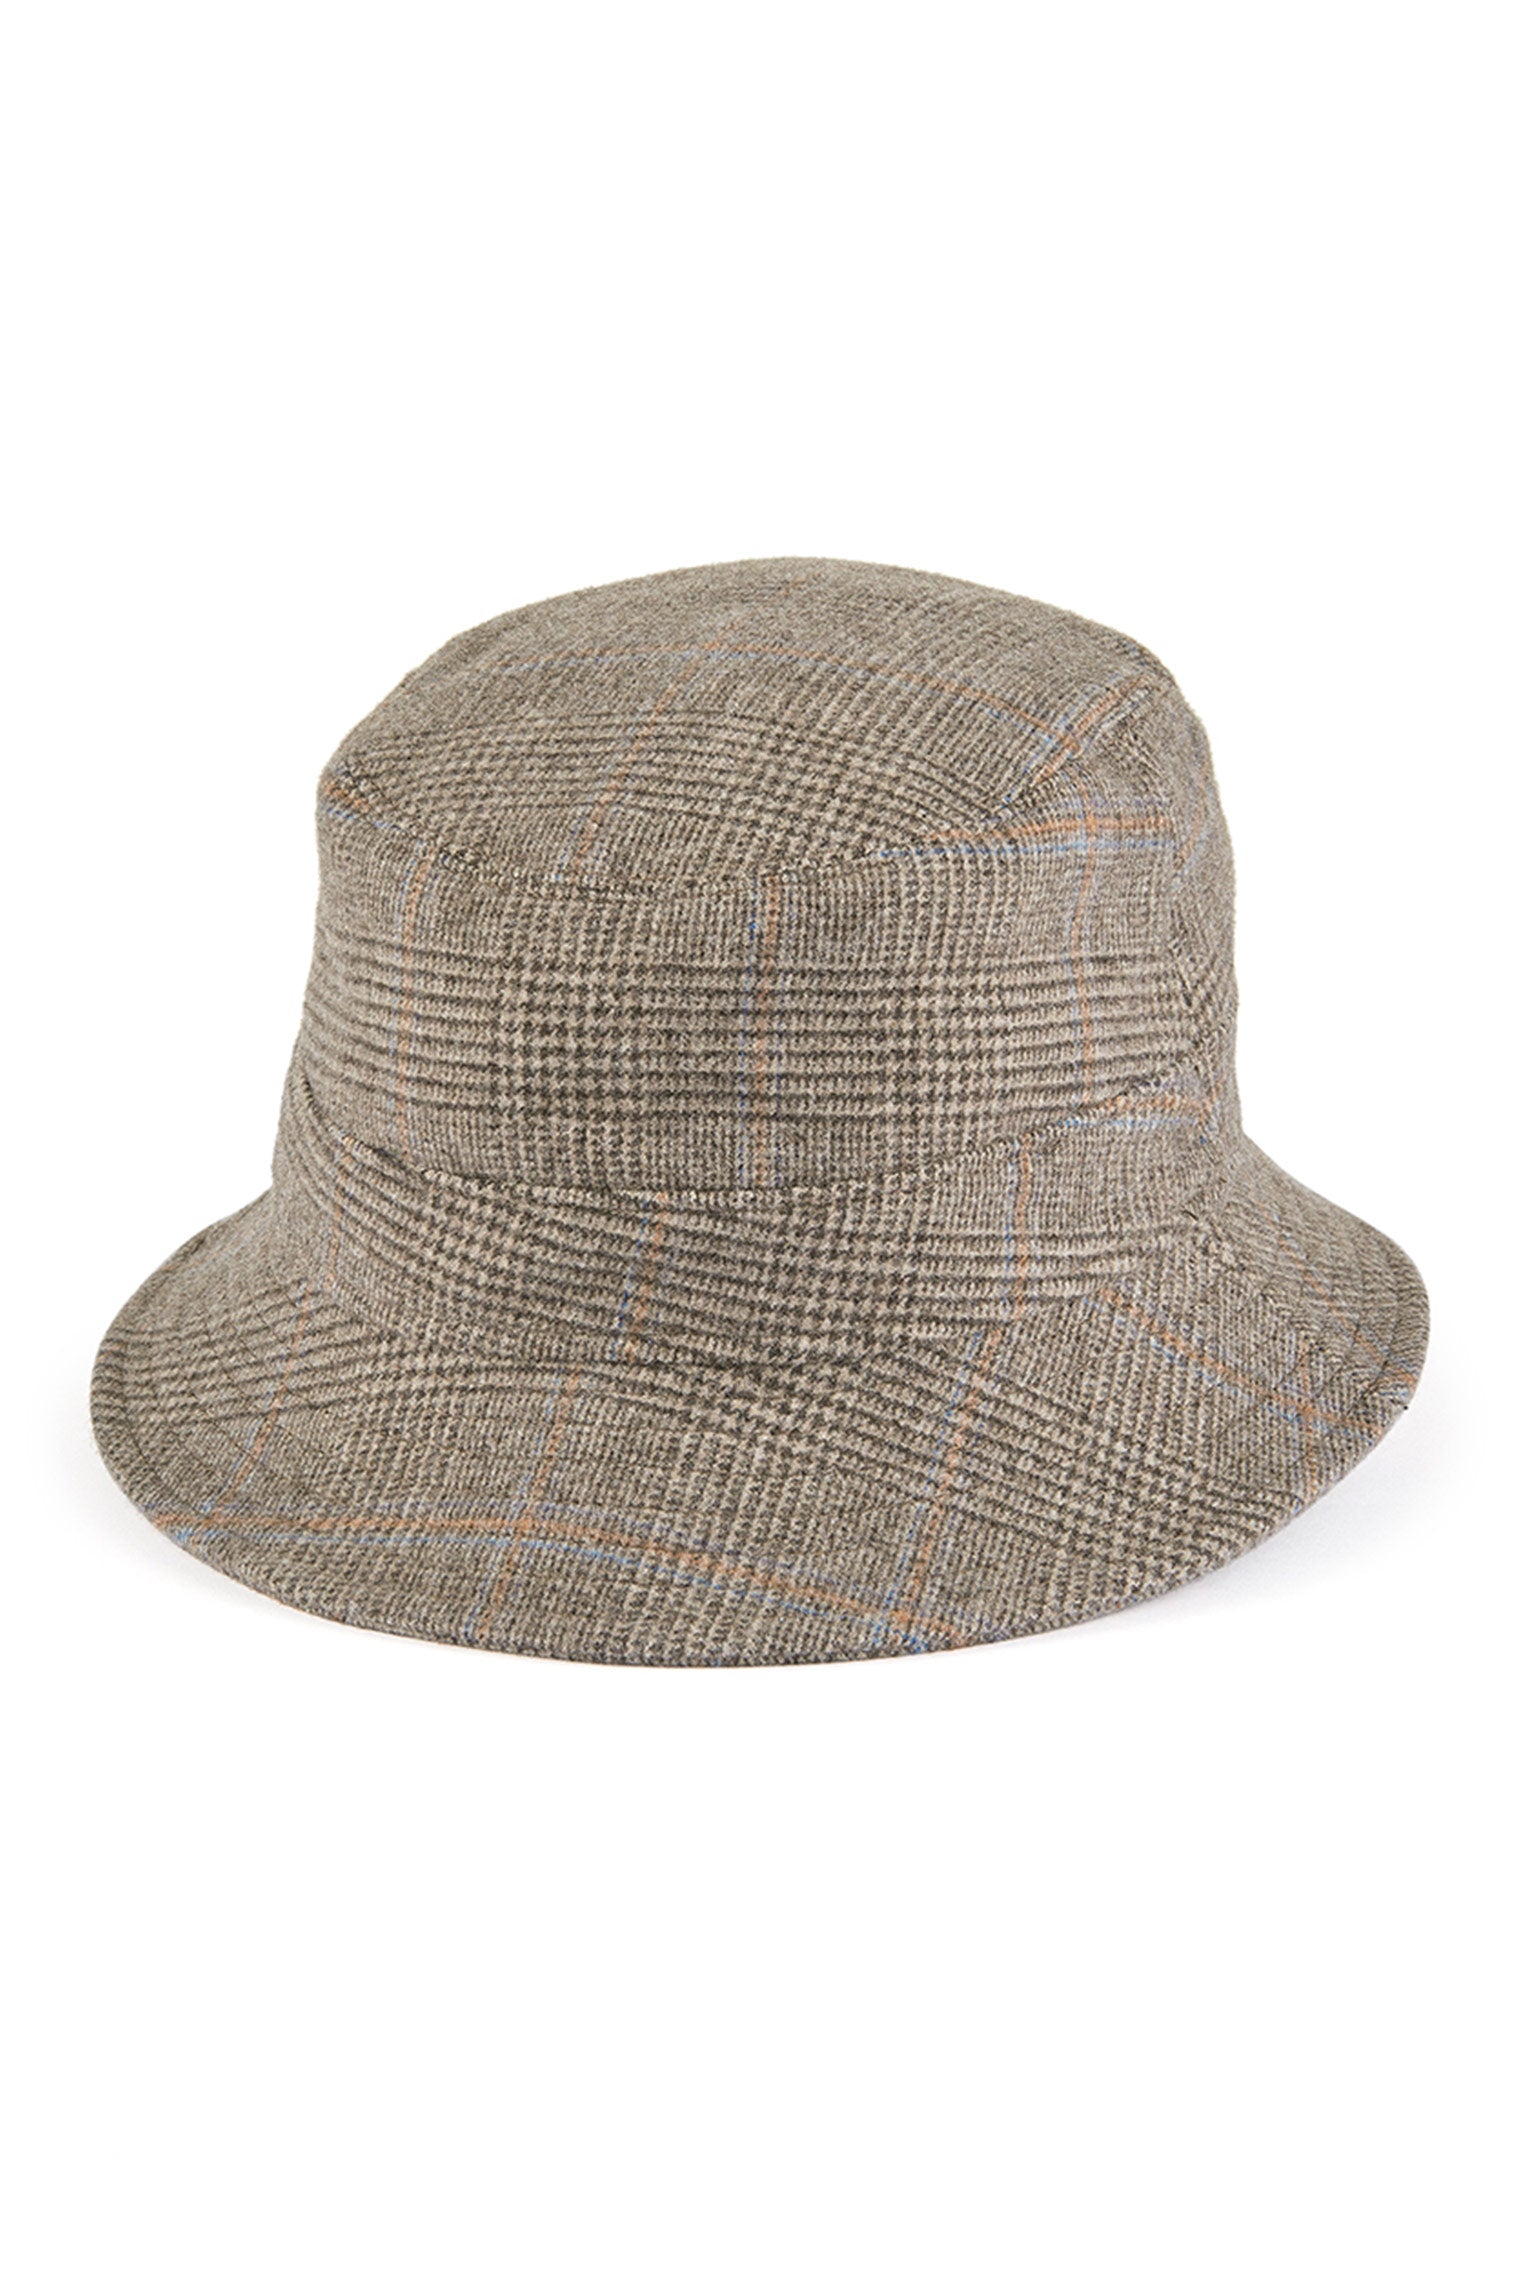 Escorial Wool Bucket Hat - Escorial Wool Headwear - Lock & Co. Hatters London UK